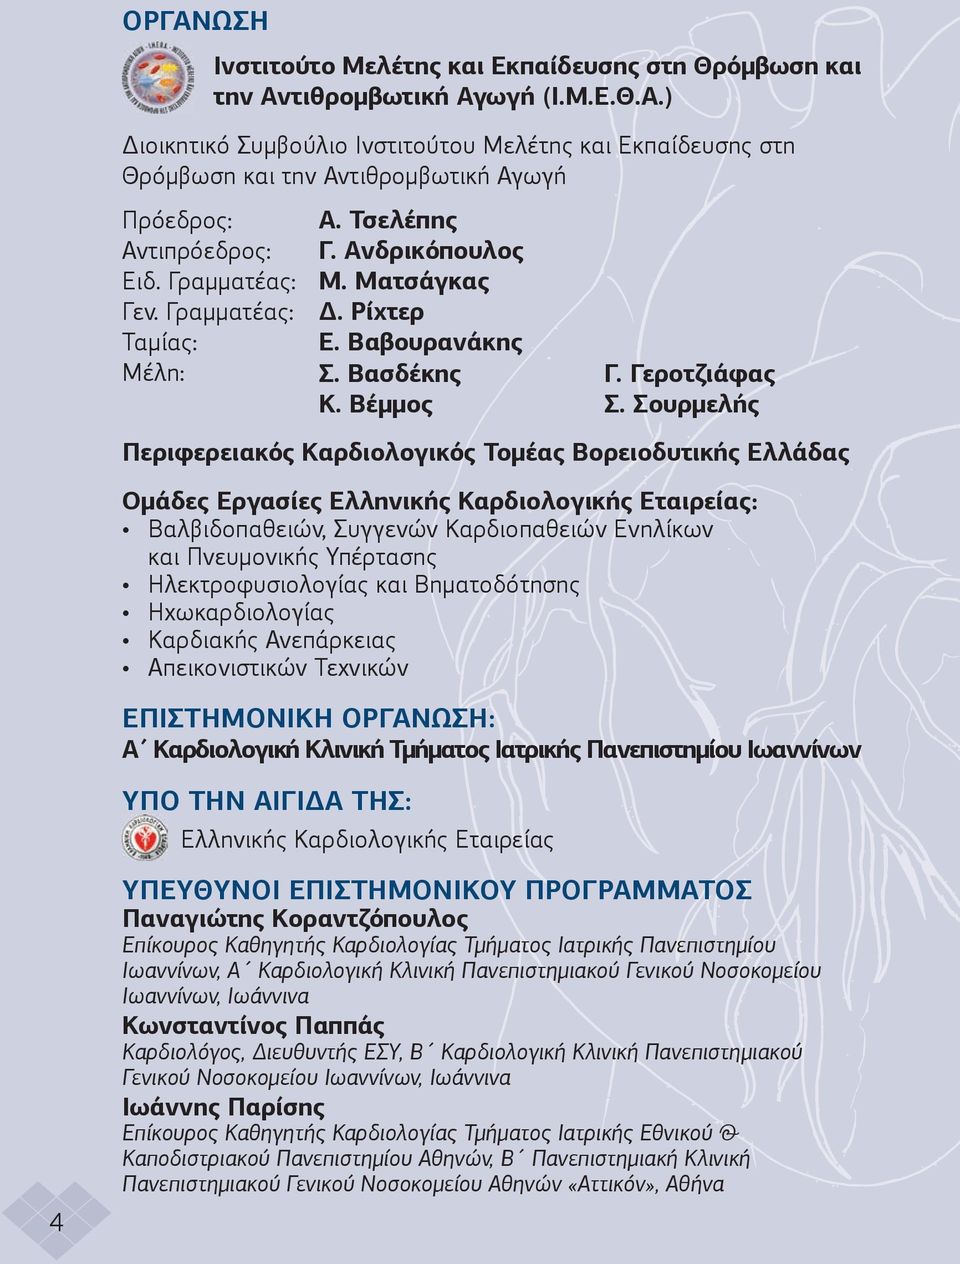 Σουρµελής Περιφερειακός Καρδιολογικός Τοµέας Βορειοδυτικής Ελλάδας 4 Οµάδες Εργασίες Ελληνικής Καρδιολογικής Εταιρείας: Βαλβιδοπαθειών, Συγγενών Καρδιοπαθειών Ενηλίκων και Πνευµονικής Υπέρτασης